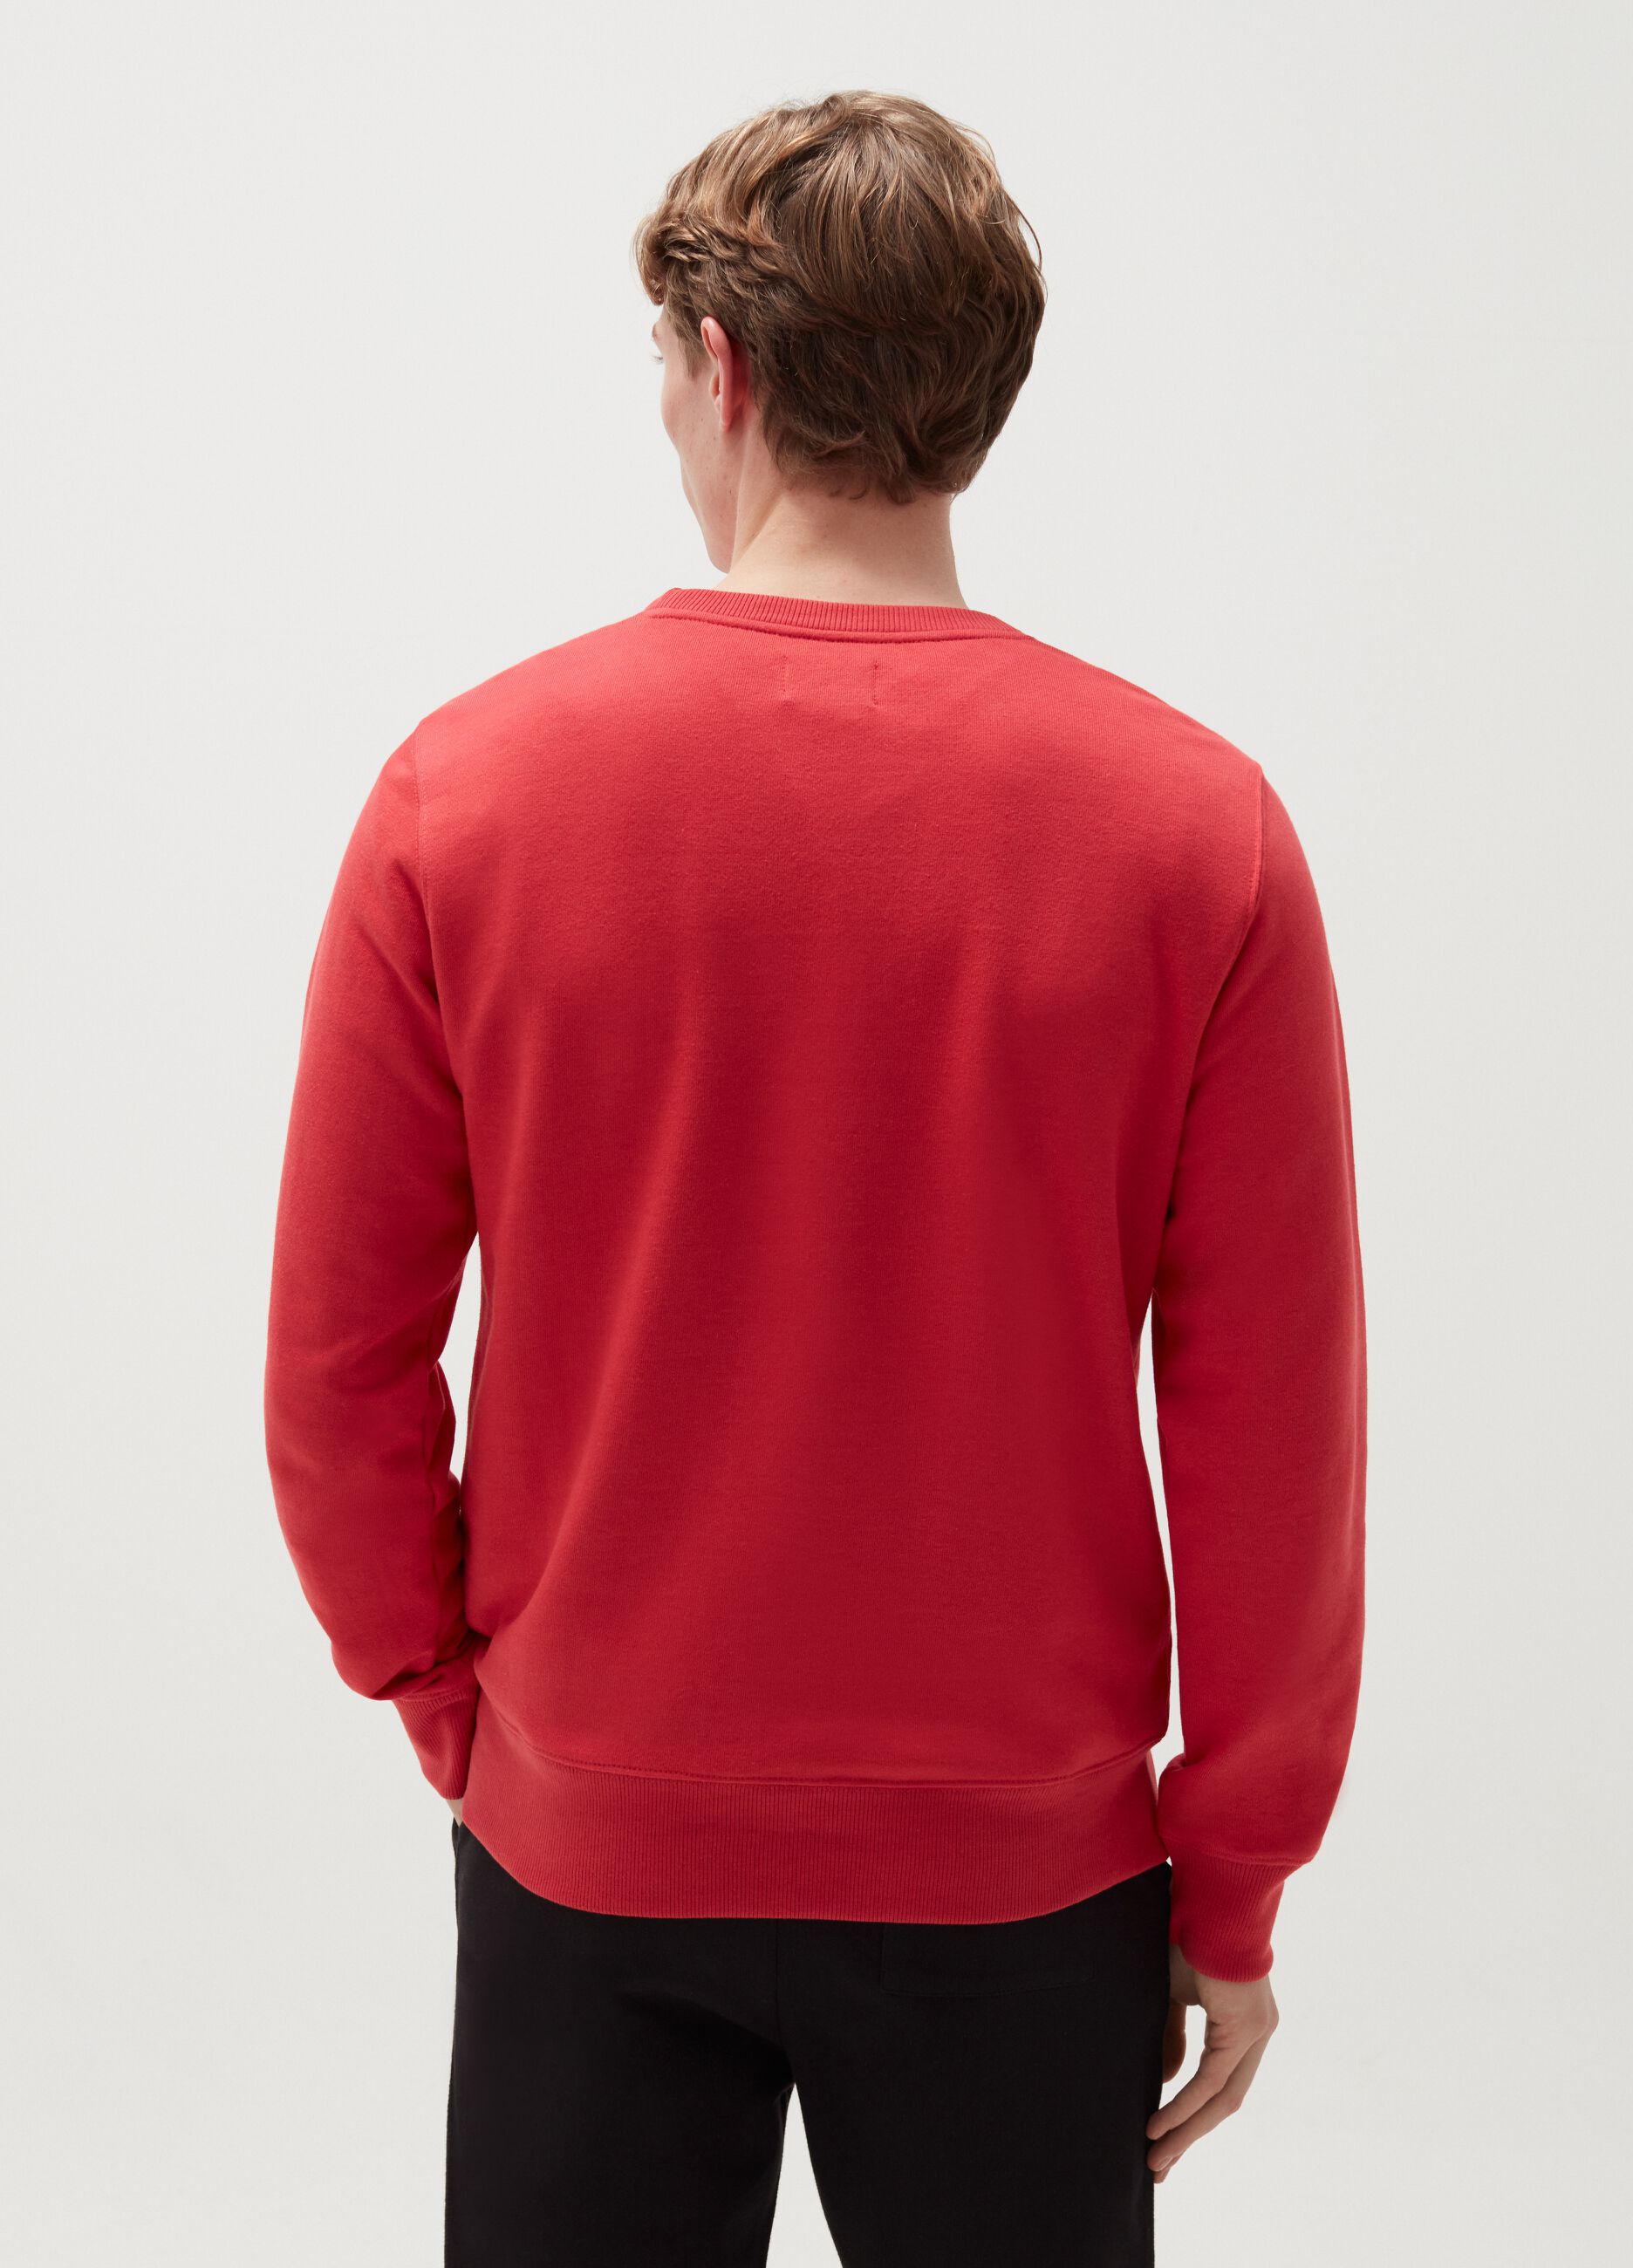 Cotton sweatshirt with round neck